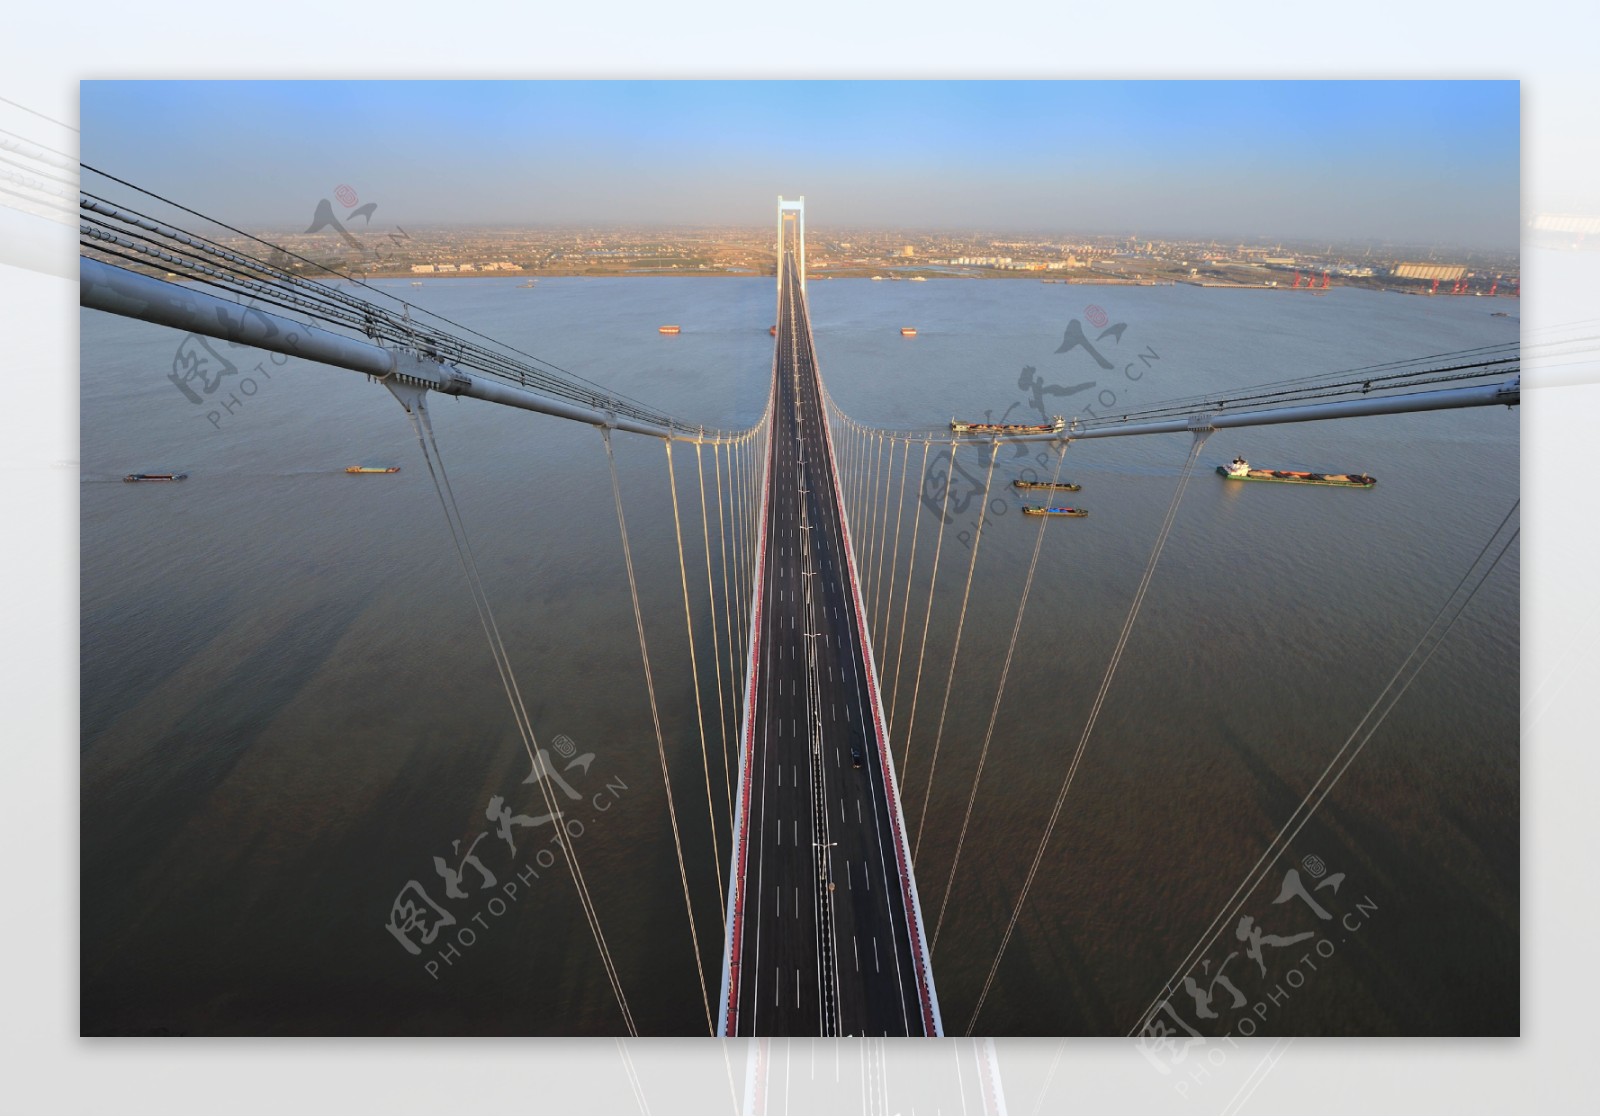 泰州长江大桥俯瞰图片